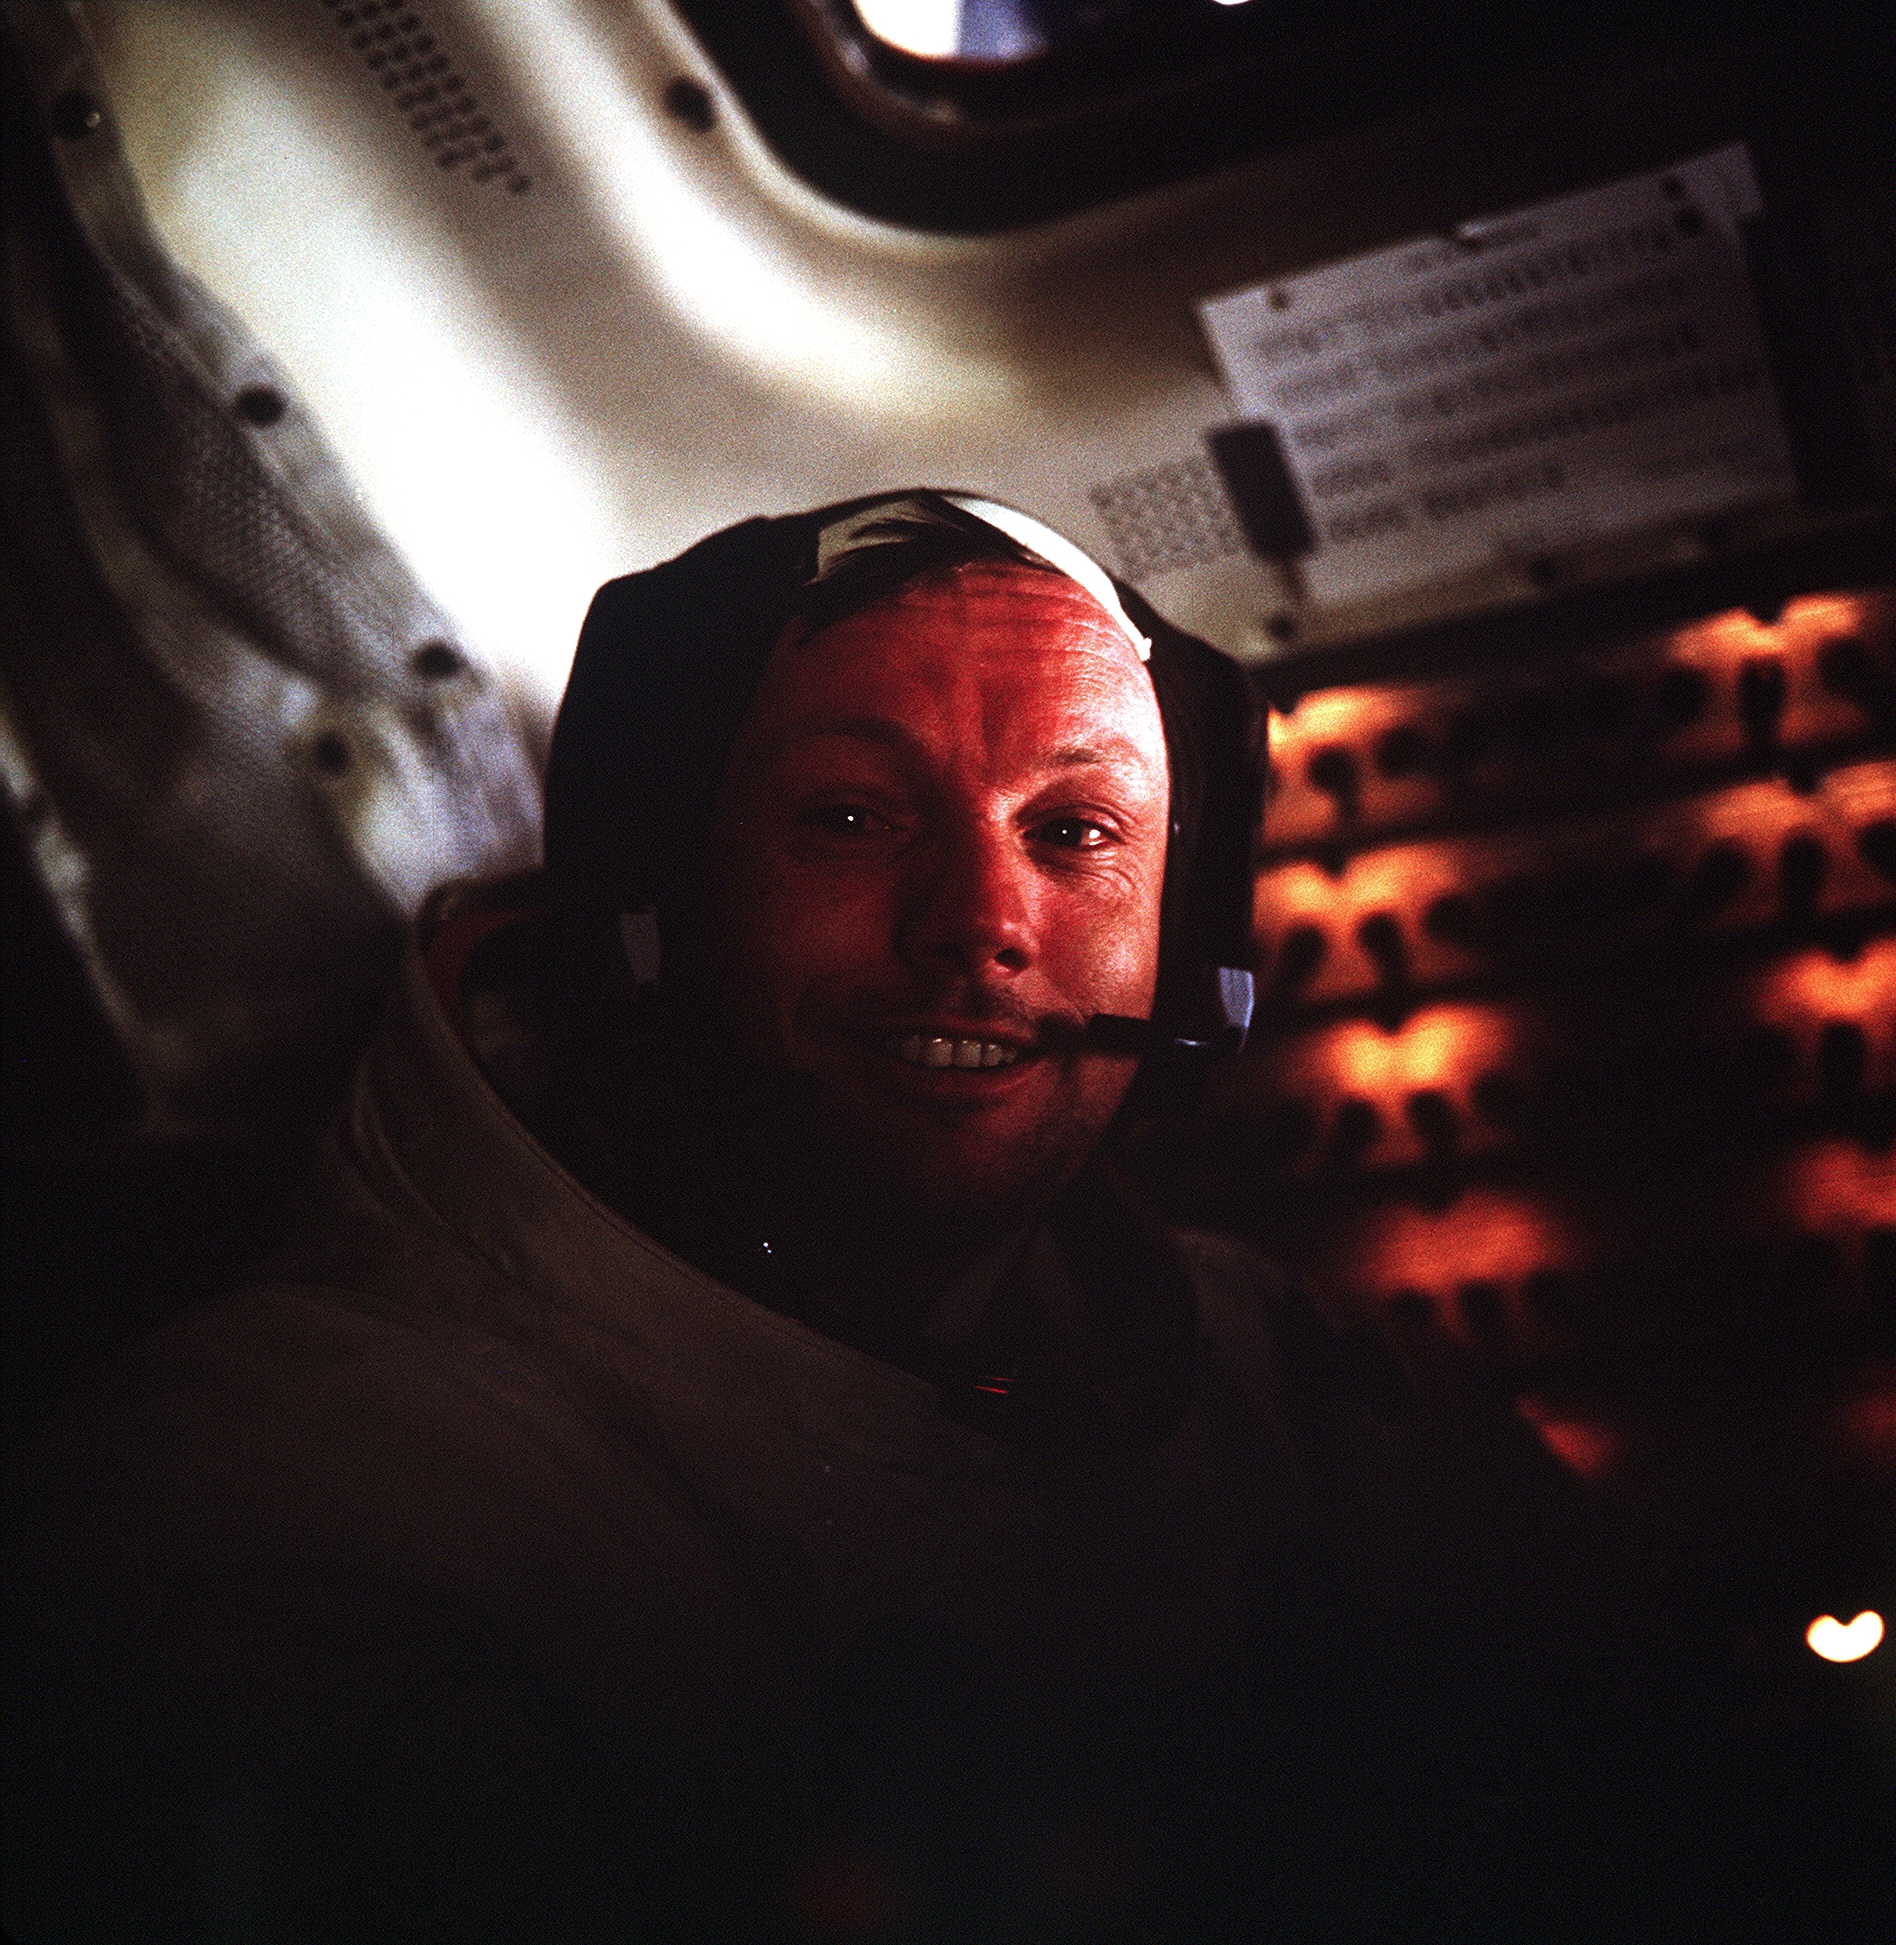 Armstrong in the Apollo 11 Lunar Module Eagle following his historic Moon walk